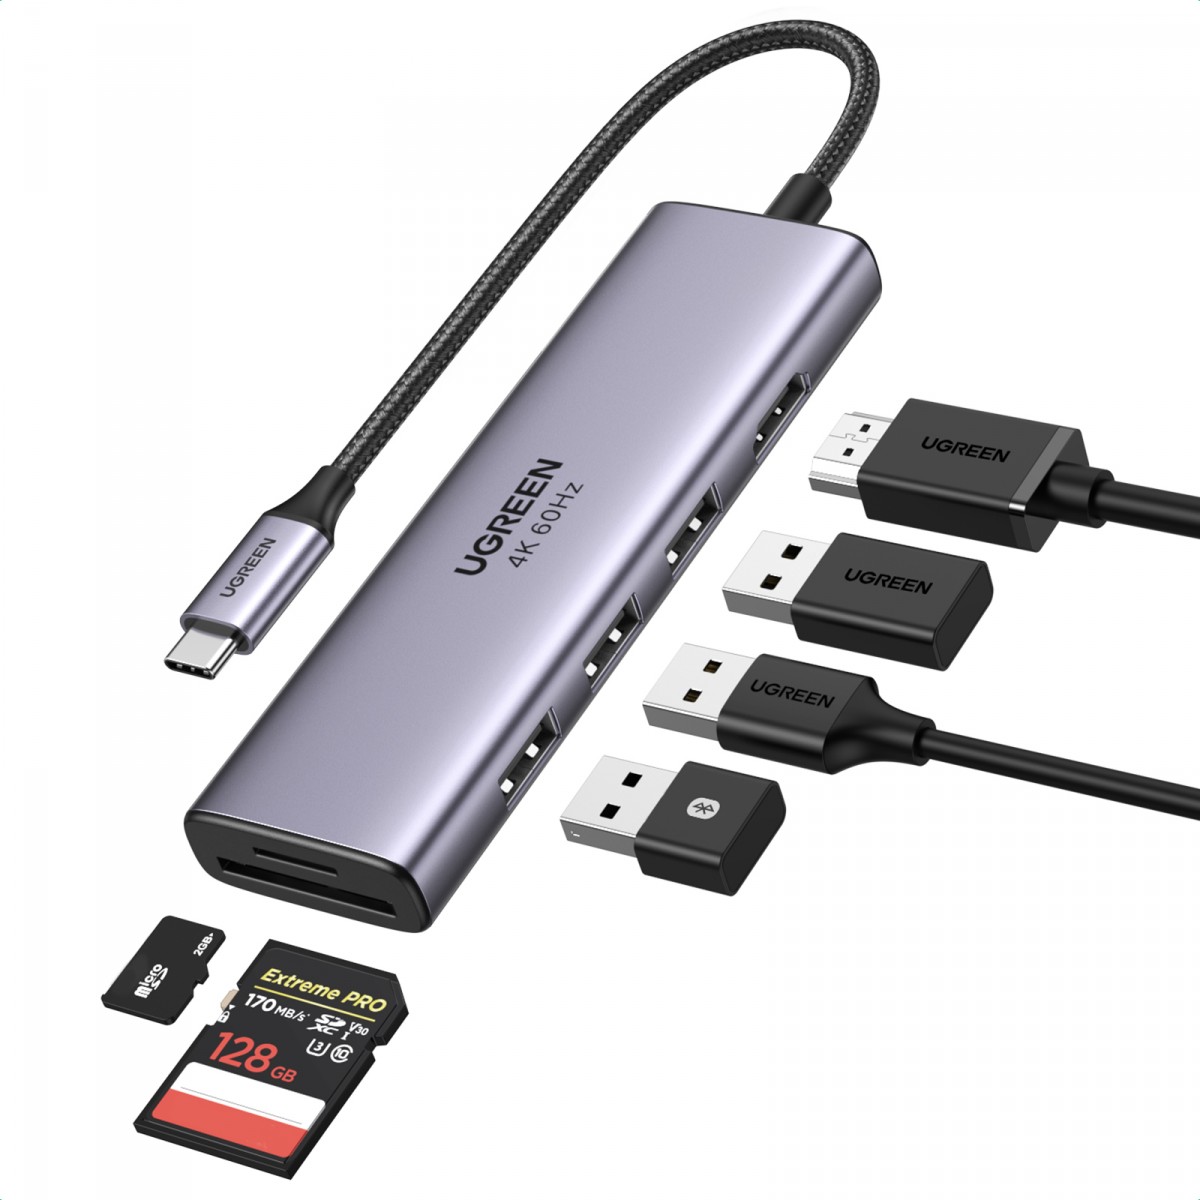 Adaptador Ugreen, USB-C para HDMI + 3 Portas USB 3.0 A + SD/TF, Cinza, CM511, 60383